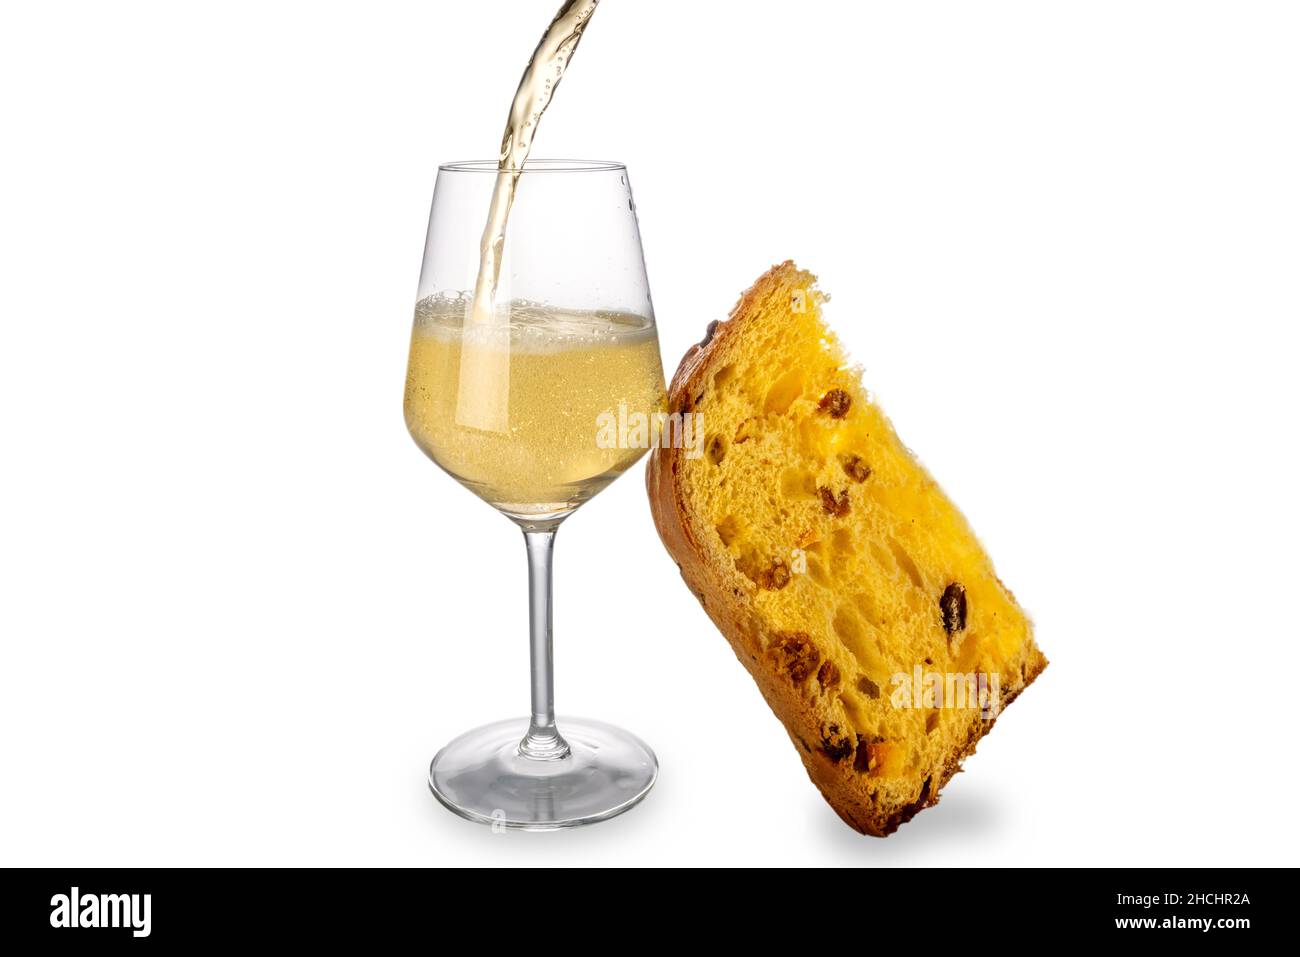 Champagne ou vin mousseux se désalant dans un verre avec une tranche de gâteau aux panettons, isolé sur du blanc.Noël, le concept des célébrations du nouvel an.Copier l'espace Banque D'Images